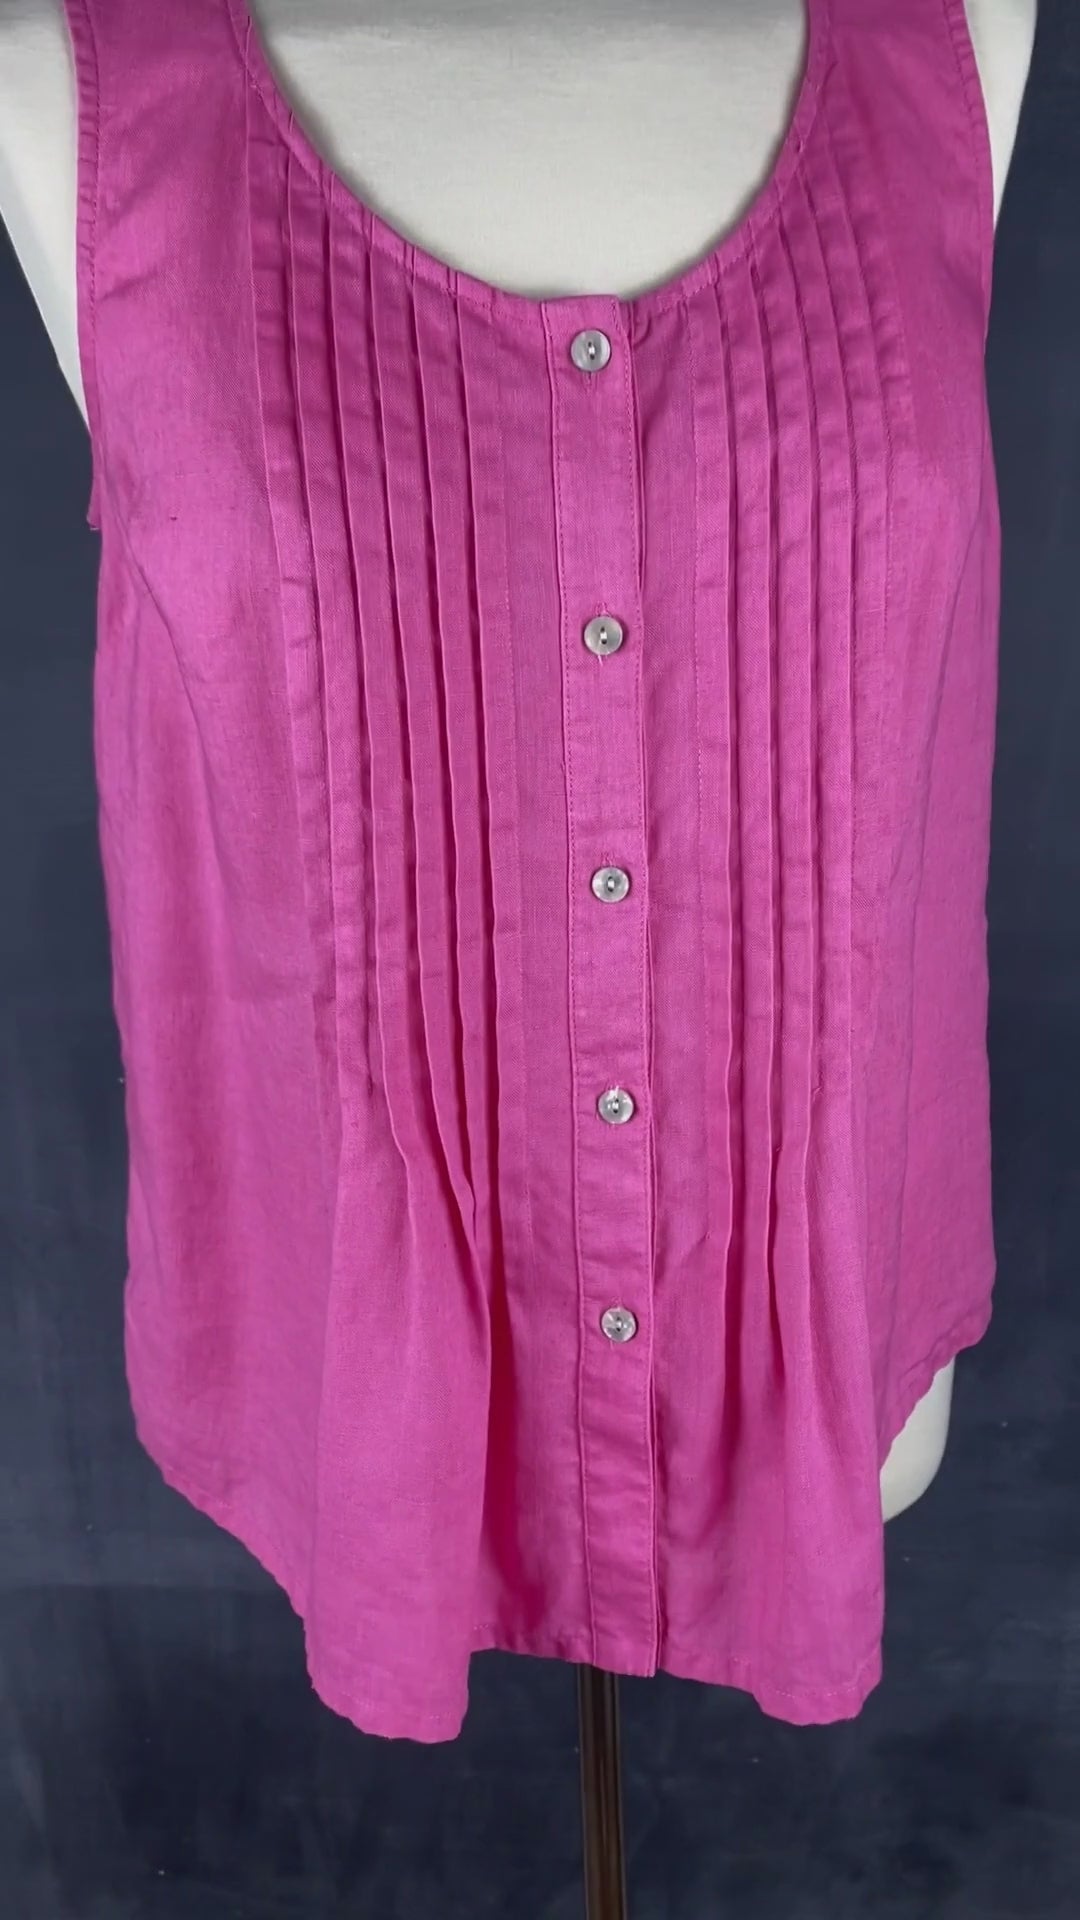 Blouse sans manches en lin rose, corsage plissé, Jones New York Sport, taille small. Vue de la vidéo qui présente la blouse.